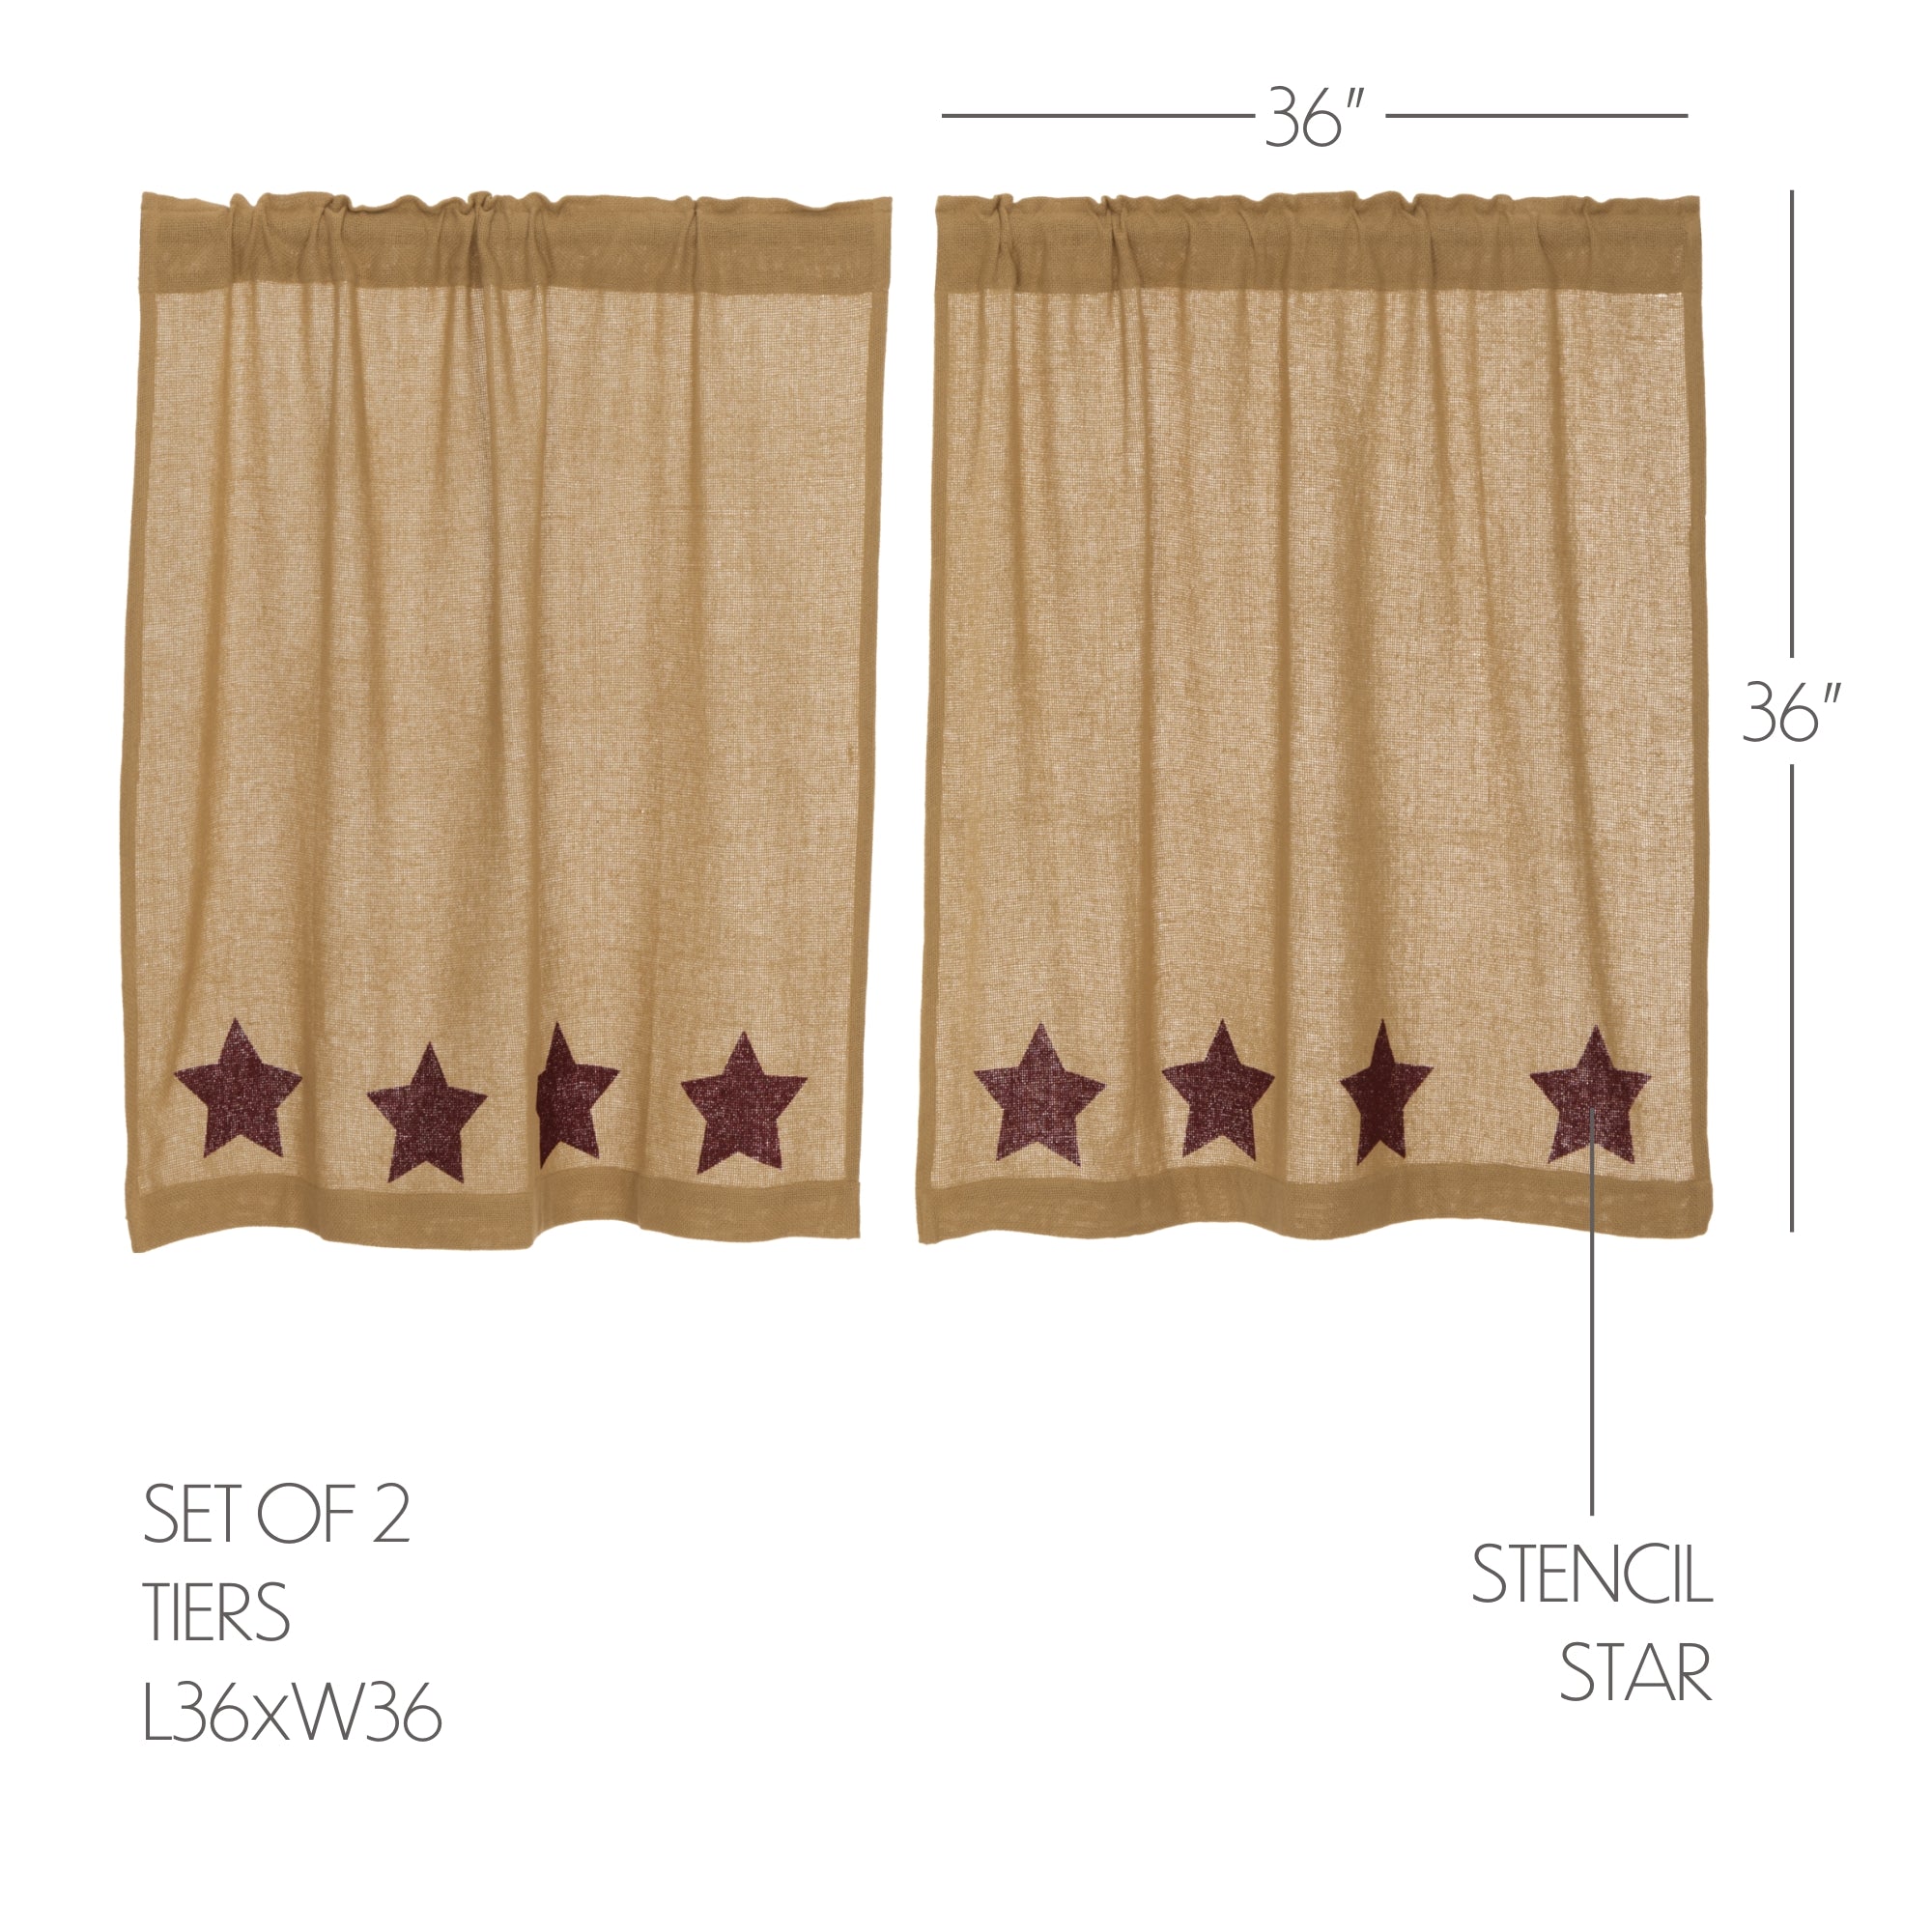 Burlap w/Burgundy Stencil Stars Tier Curtain Set of 2 L36xW36